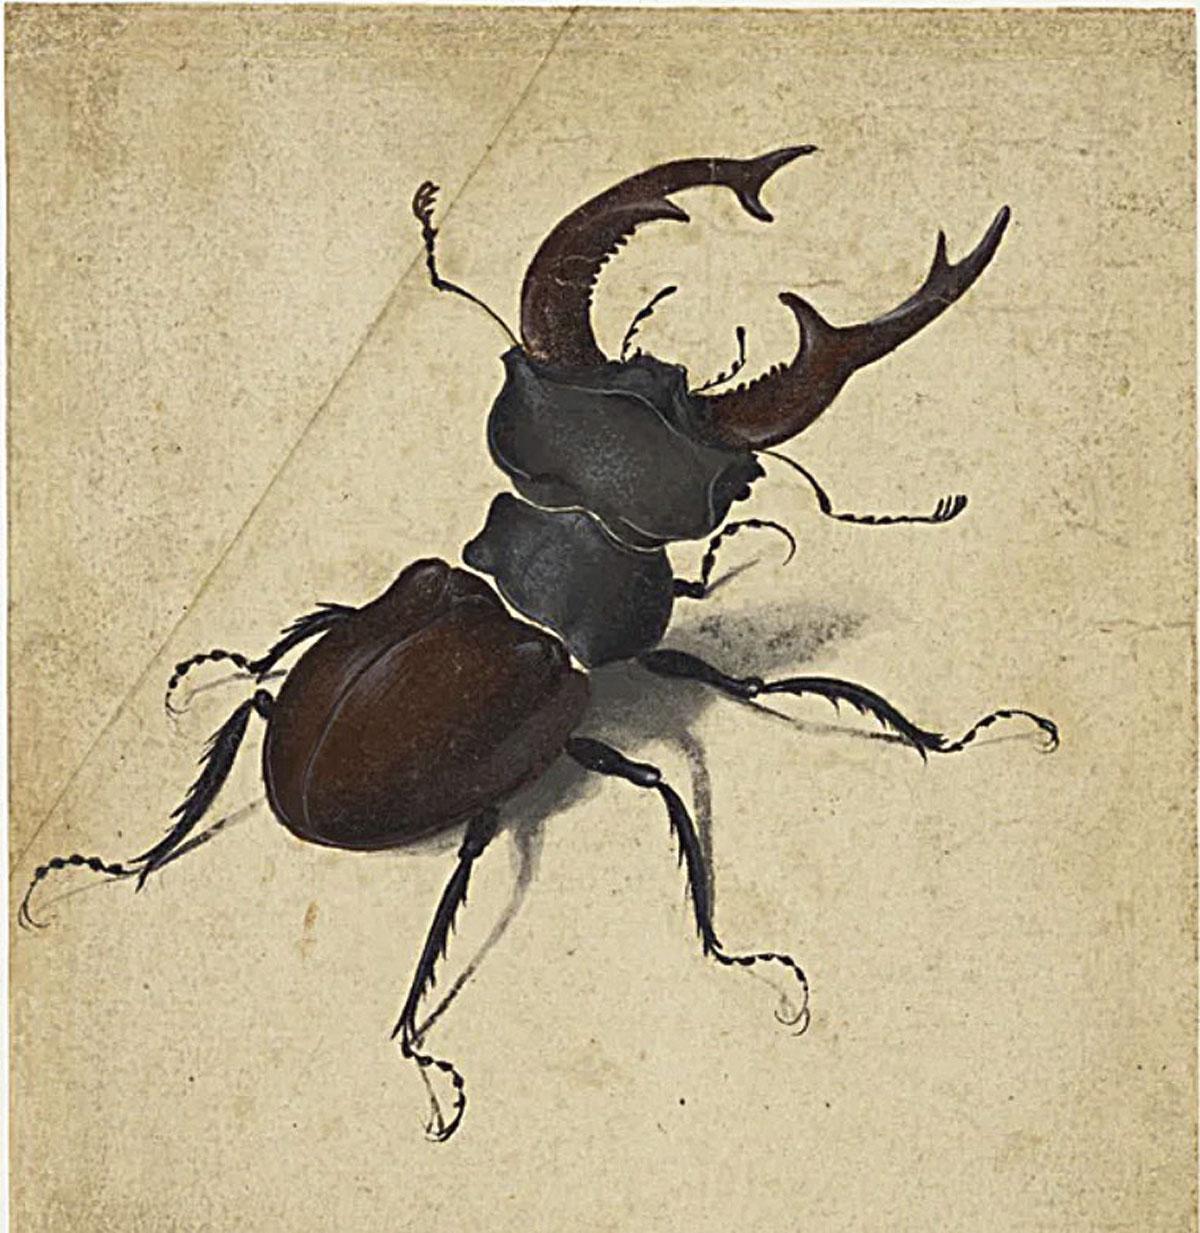 Ook Albrecht Dürer maakte gedetailleerde tekeningen van de kleinste schepsels, zoals dit vliegend hert (1505).